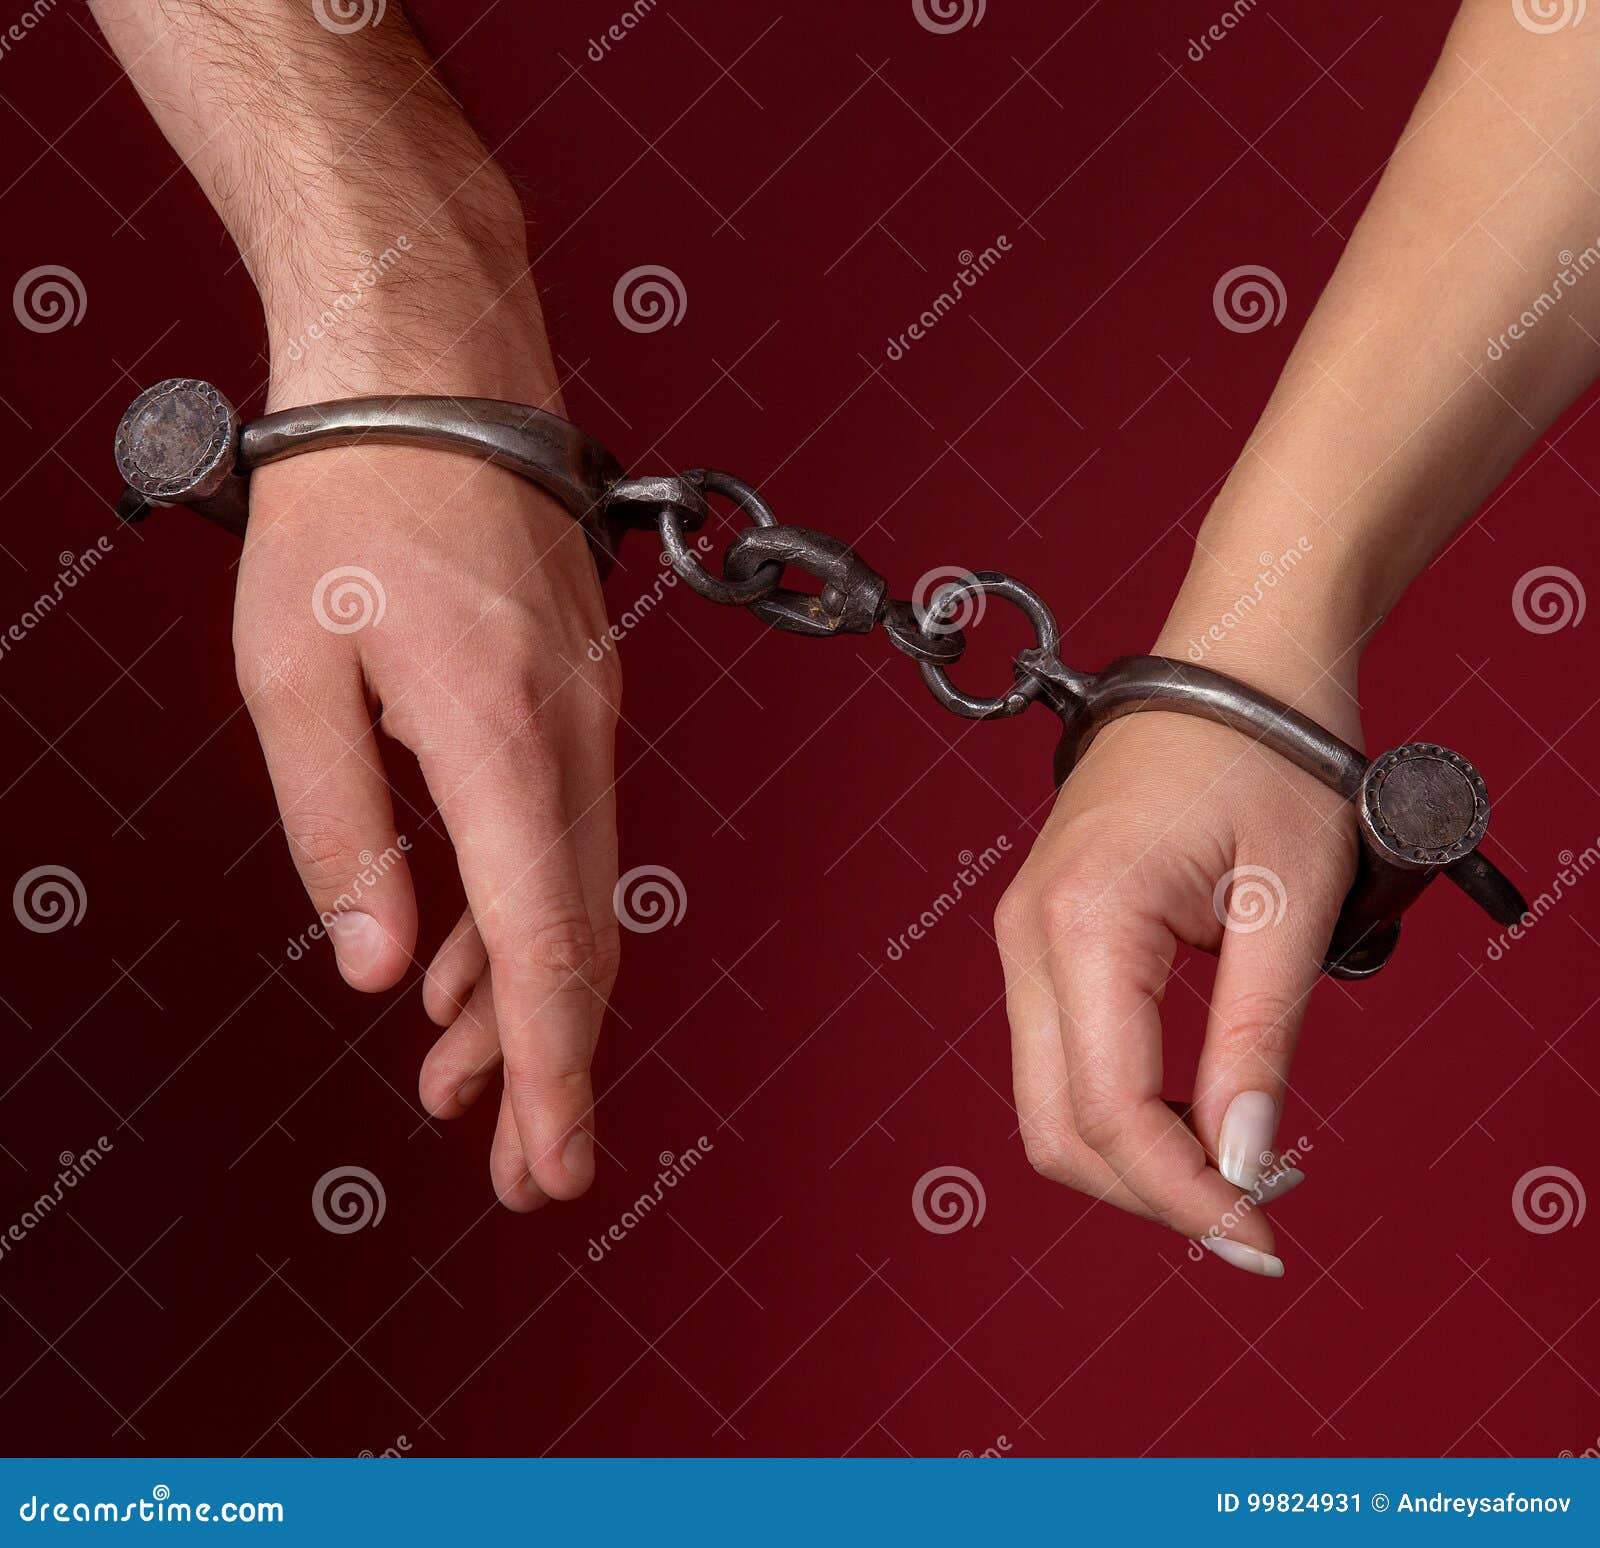 Парень надевает наручники. Мужчина в наручниках. Мужская и женская рука в наручниках. Надевают наручники на руки. Женские руки в наручниках.